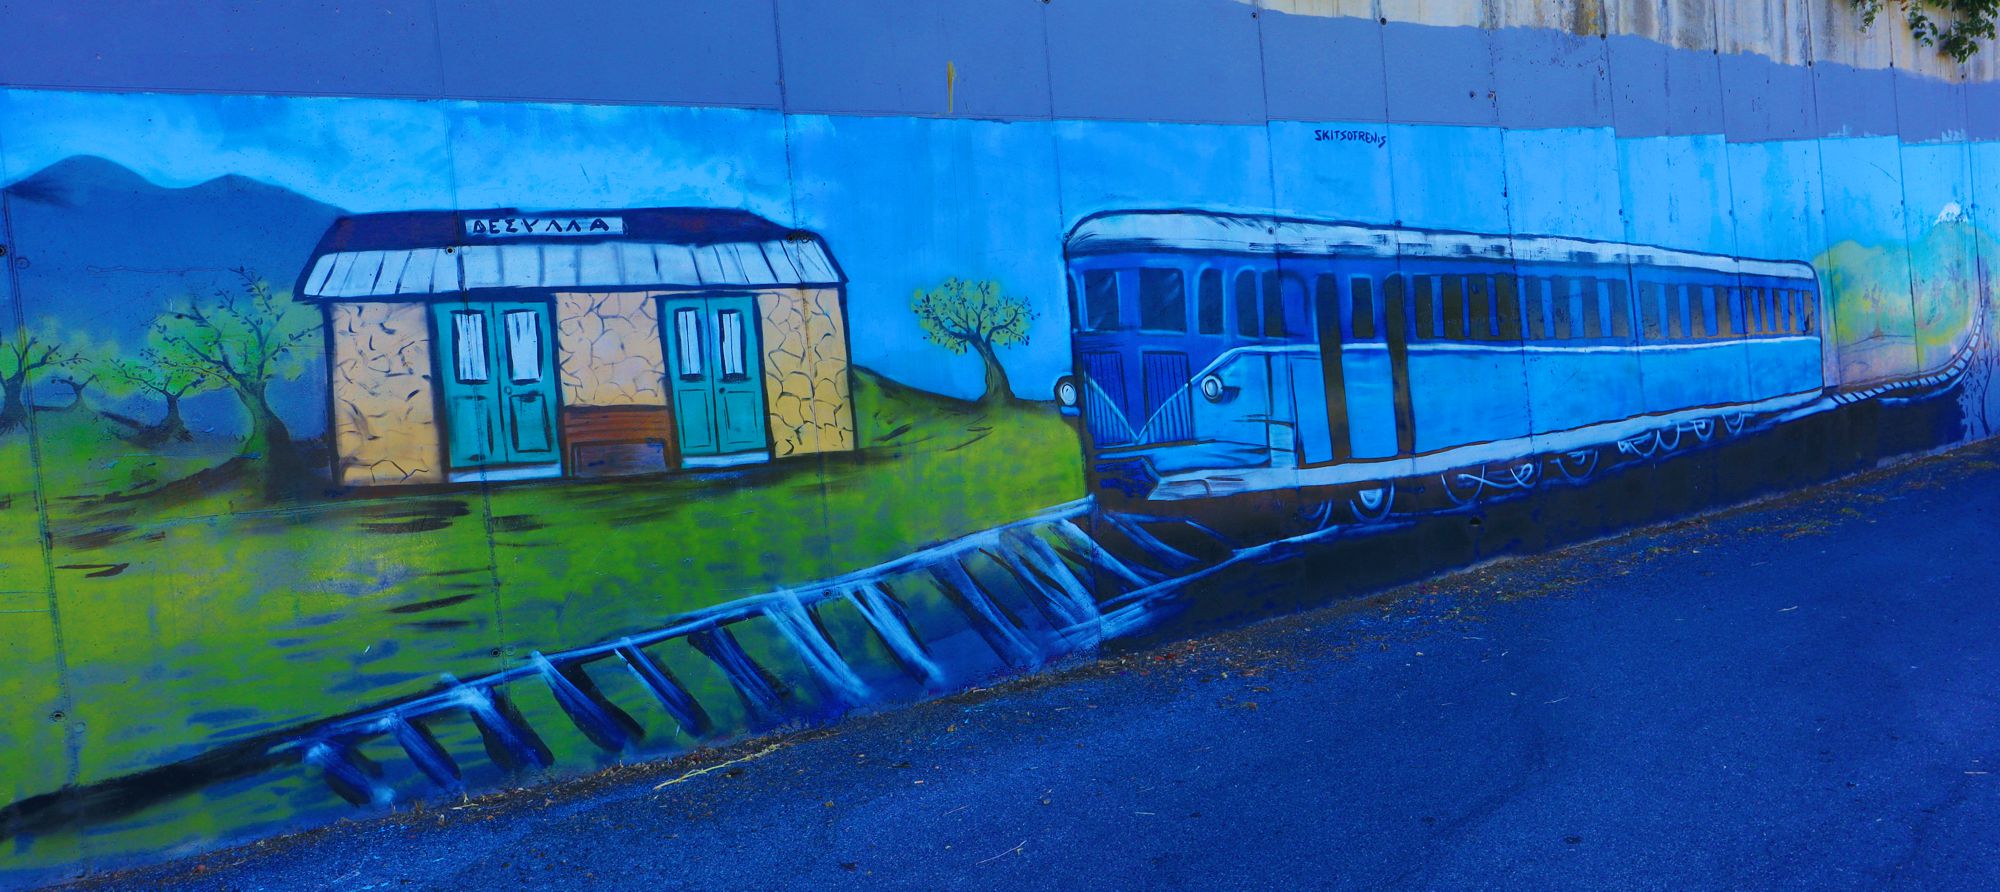 Το τραίνο στη ΝΔ Αρκαδία: Καρτουνίστικη απεικόνιση του τραίνου στο Δεσύλλα